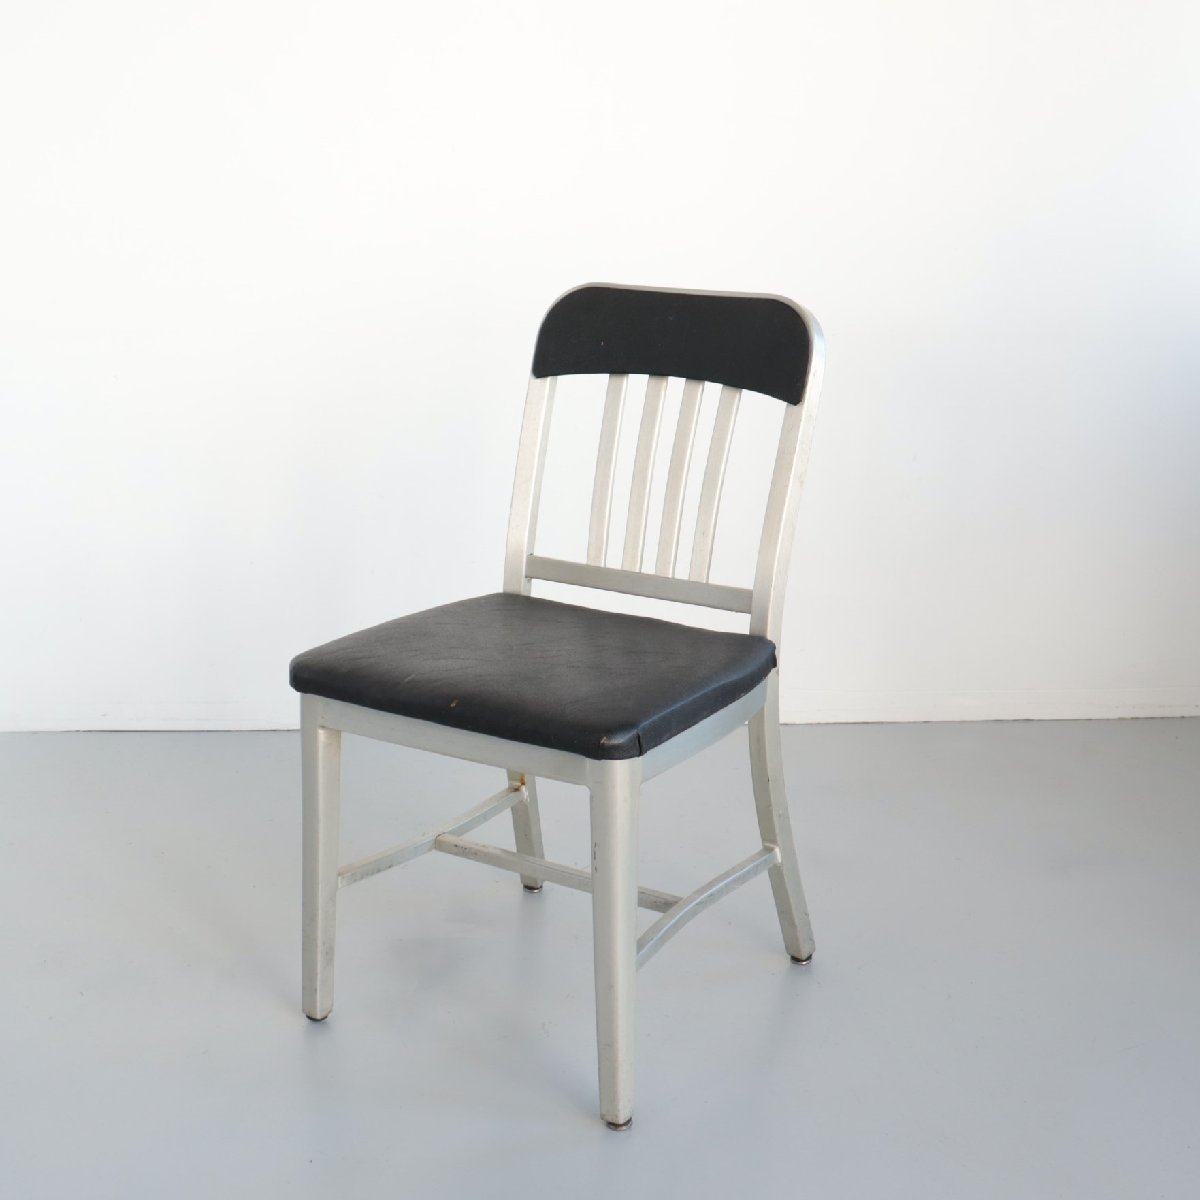 18000円流行り 購入オンライン ネイビーチェア アメリカ海軍 椅子